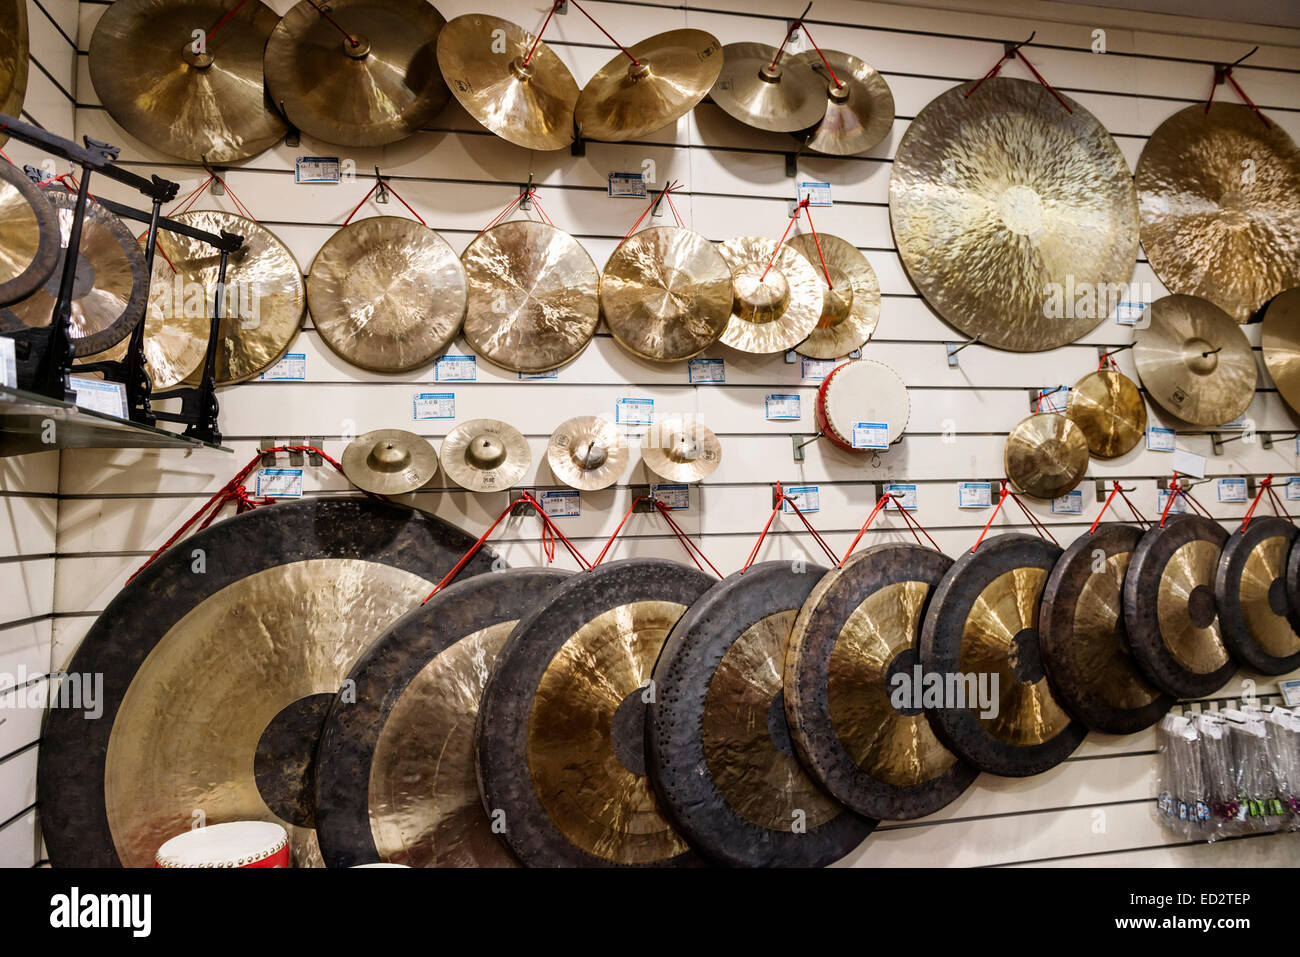 Strumenti musicali a percussione, cembali e gong sul display in un negozio a Shanghai in Cina Foto Stock